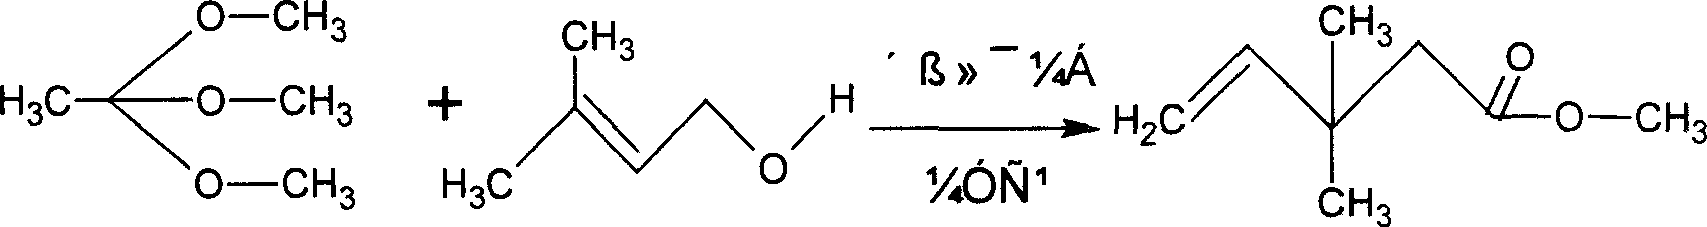 Method of preparing 3,3-dimethyl-4-pentenoic acid methyl ester with industrial scale